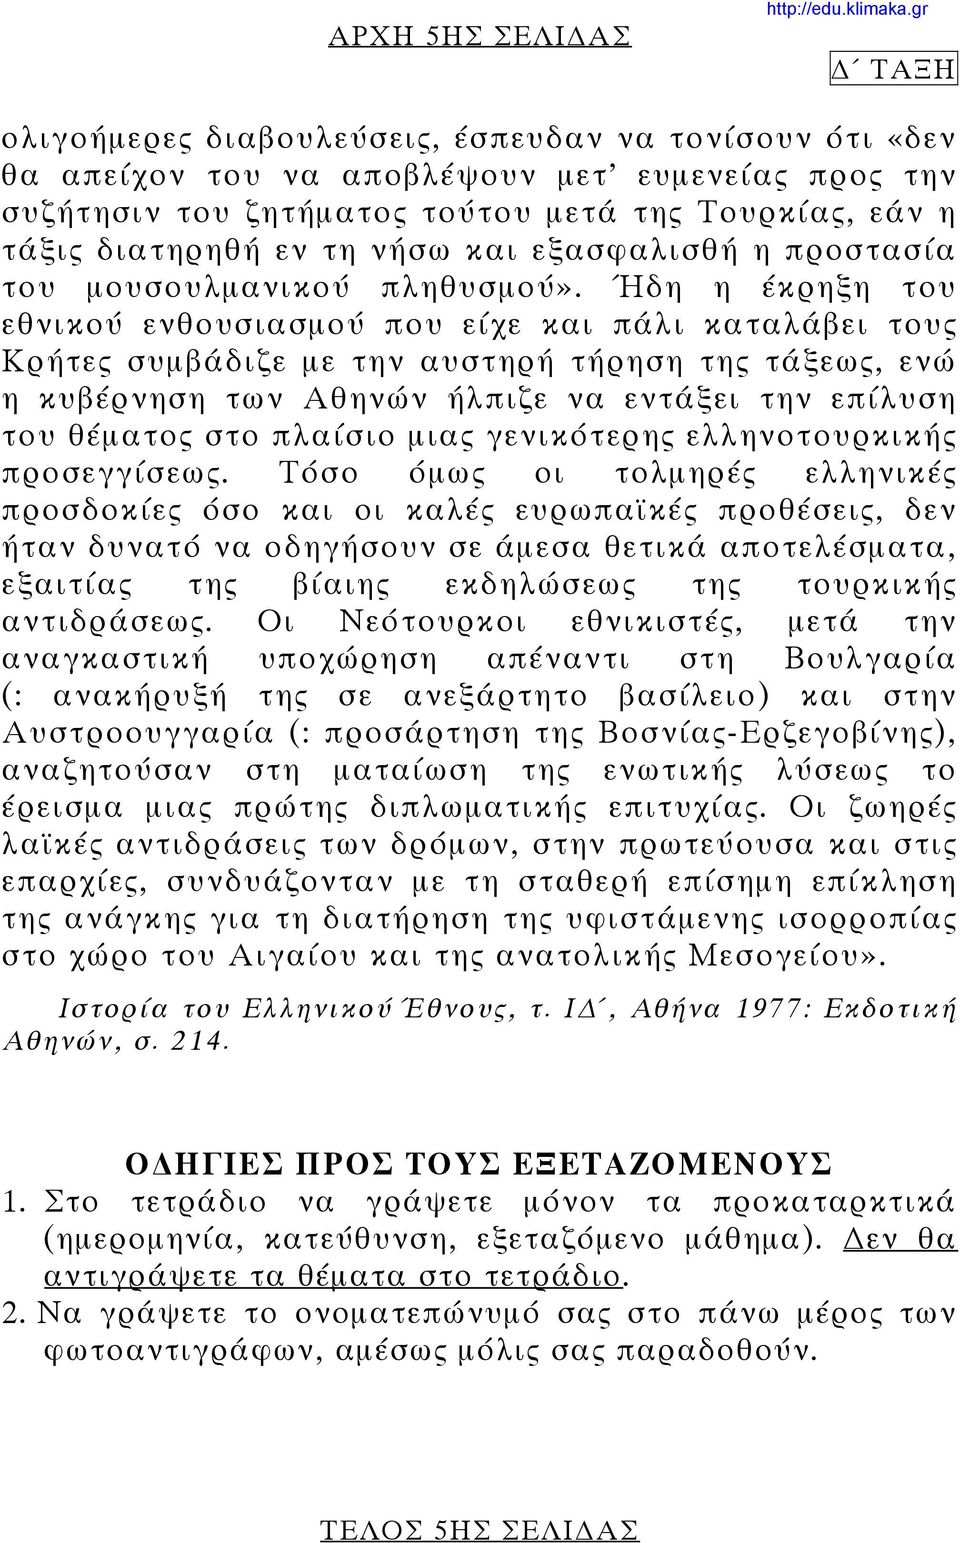 Ήδη η έκρηξη του εθνικού ενθουσιασμού που είχε και πάλι καταλάβει τους Κρήτες συμβάδιζε με την αυστηρή τήρηση της τάξεως, ενώ η κυβέρνηση των Αθηνών ήλπιζε να εντάξει την επίλυση του θέματος στο